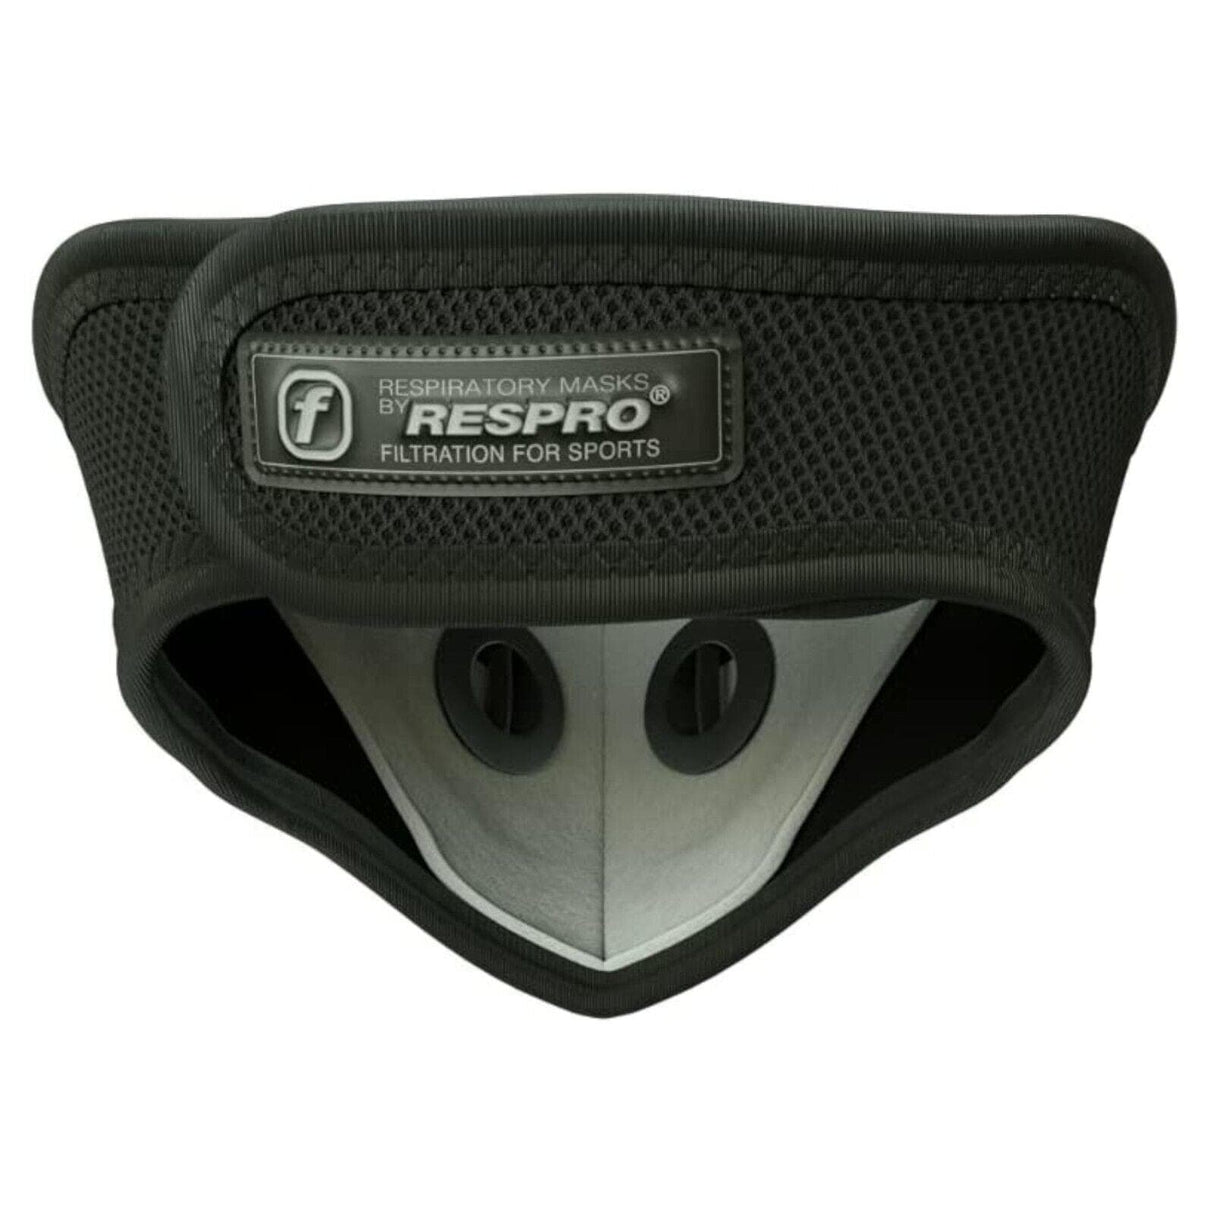 Respro Ultralight Mask with Powa Filter Valves - Black - Medium